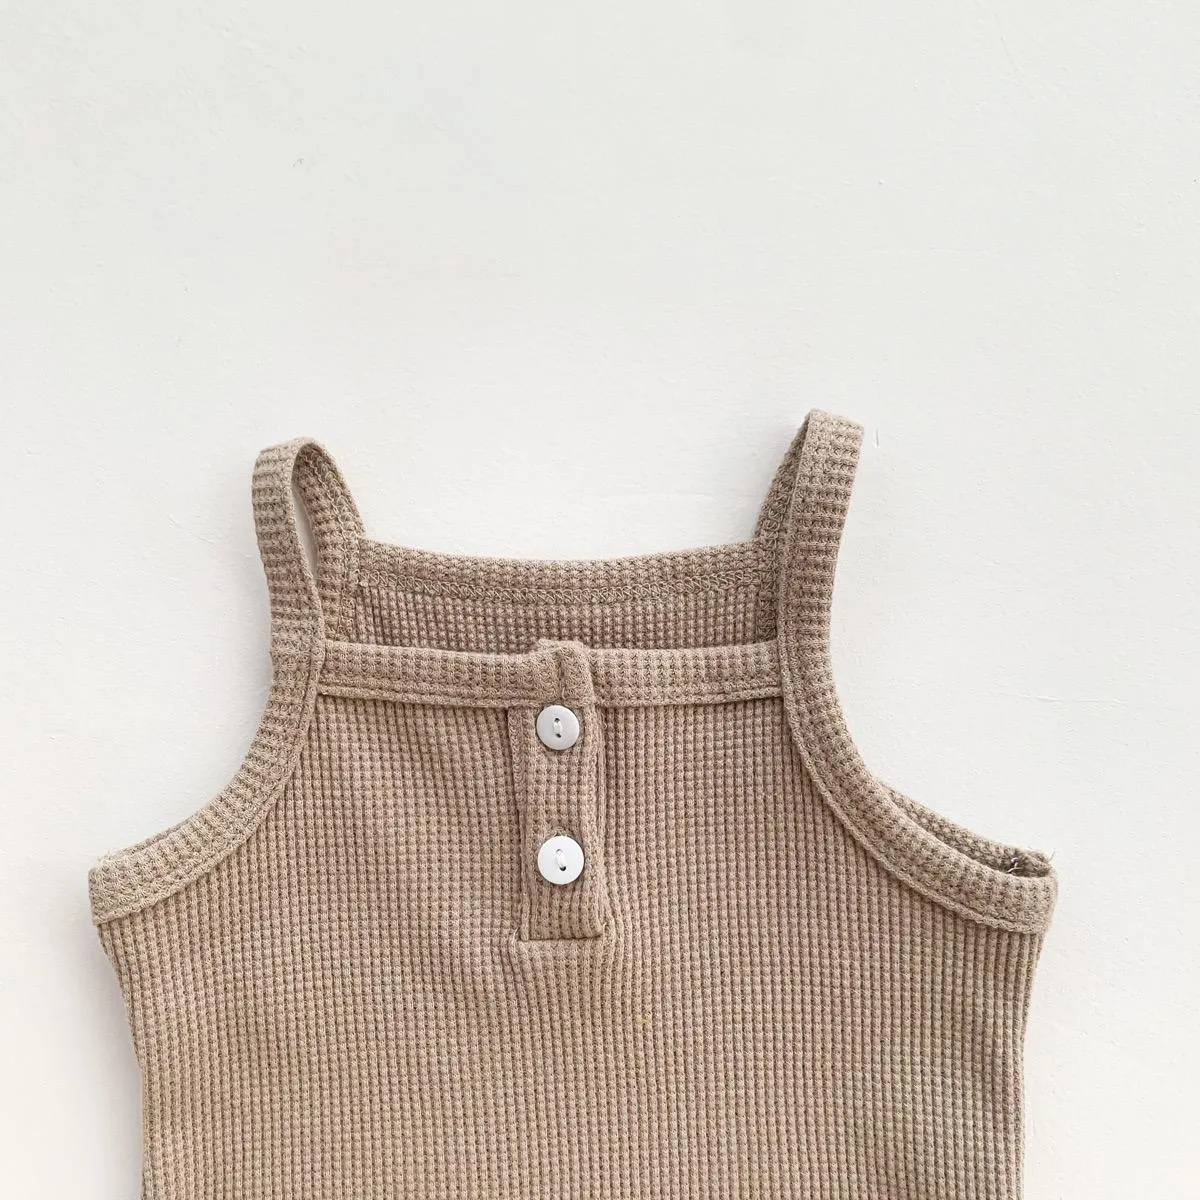 Australien Koreanische US INS Kleinkind Kleidung Sets Waffel Baumwolle Ziemlich Weiche Kurzarm Tanks mit Hot Shorts 2 stücke Neugeborenen Outfits